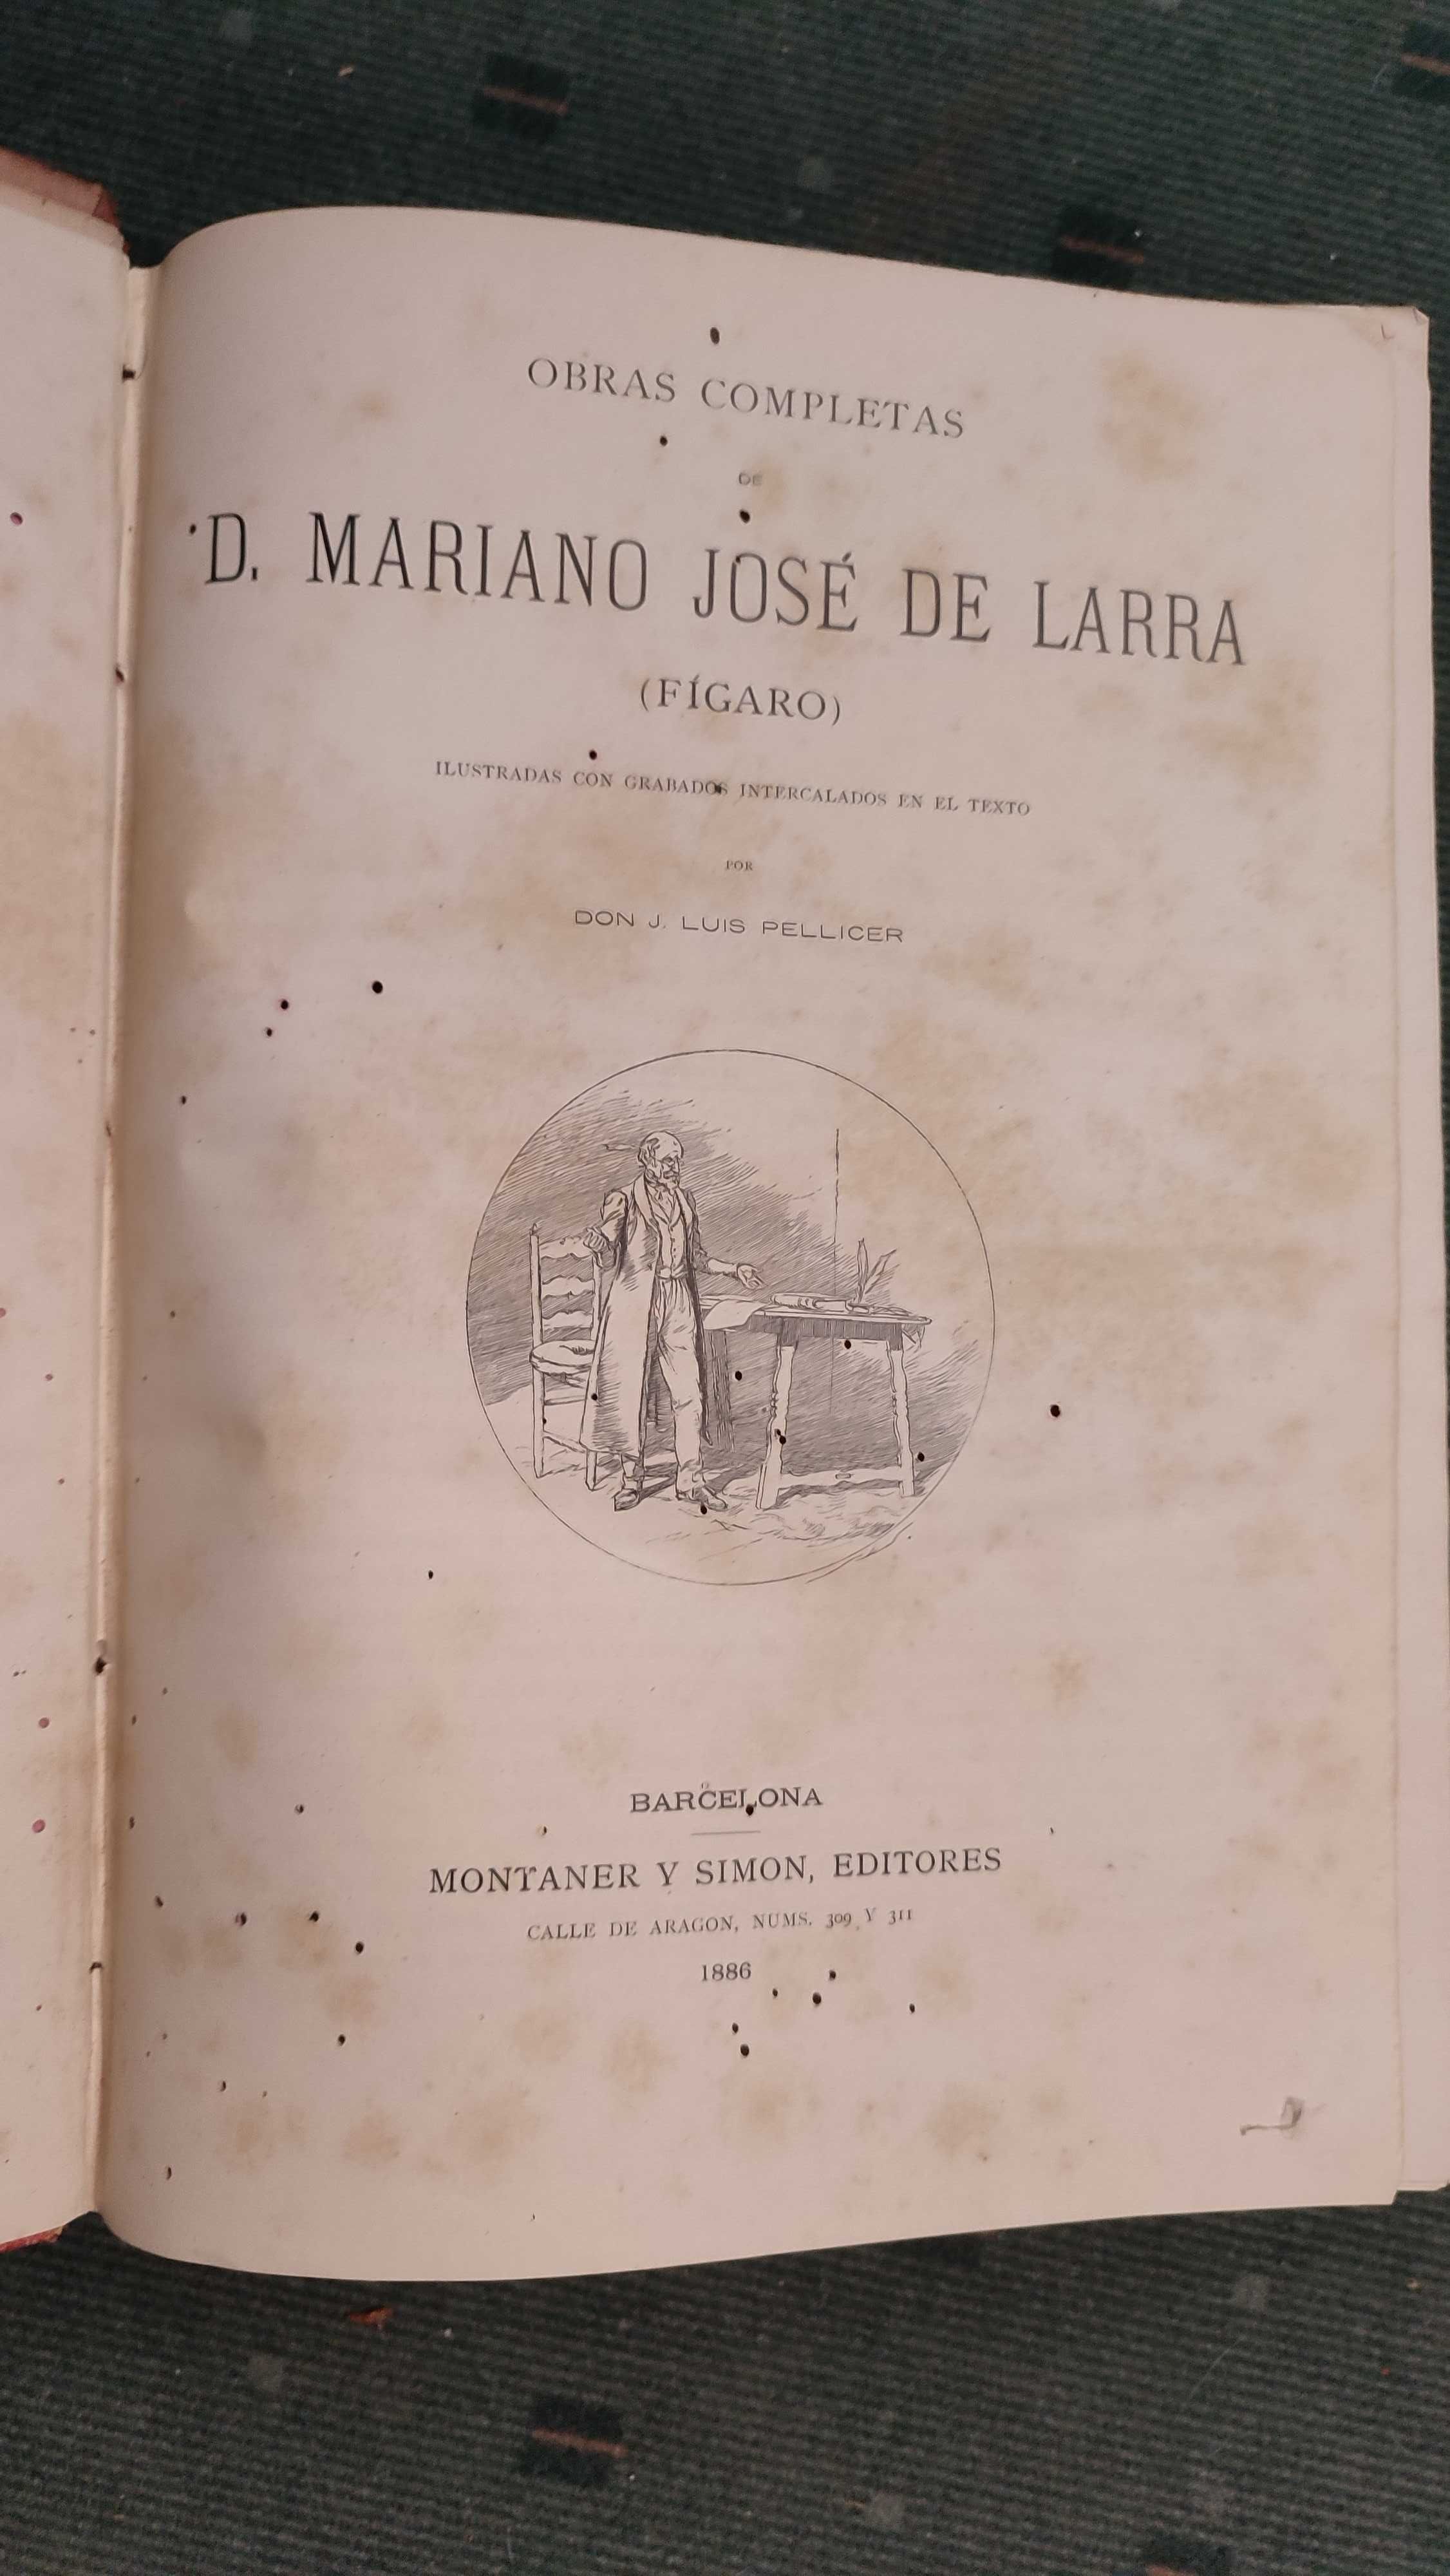 Obras completas de D. Mariano José de Larra (Fígaro) - 1886